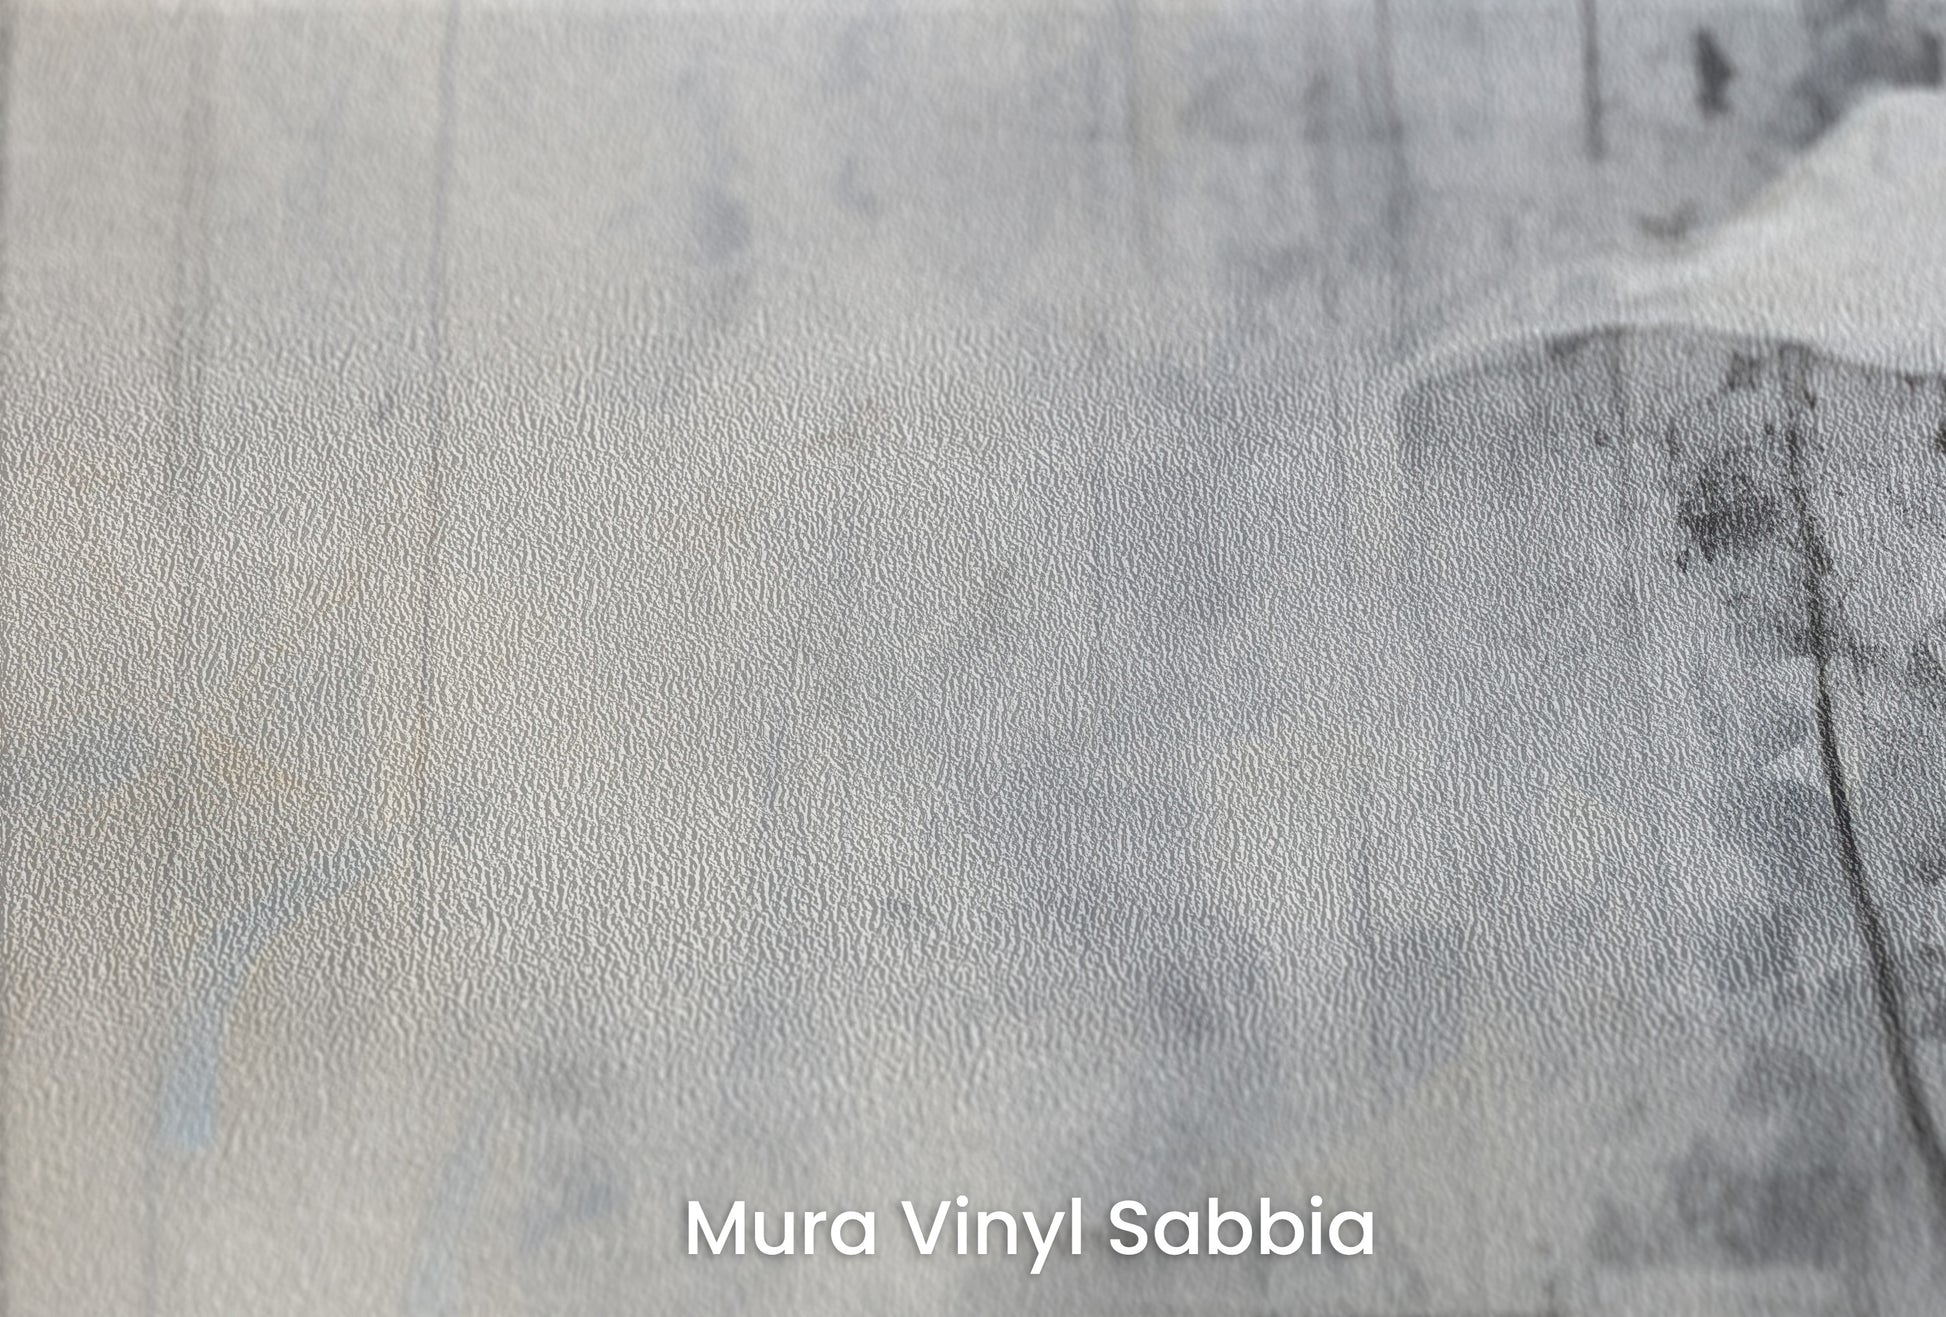 Zbliżenie na artystyczną fototapetę o nazwie SOFTLY SPEAKING SILHOUETTES na podłożu Mura Vinyl Sabbia struktura grubego ziarna piasku.